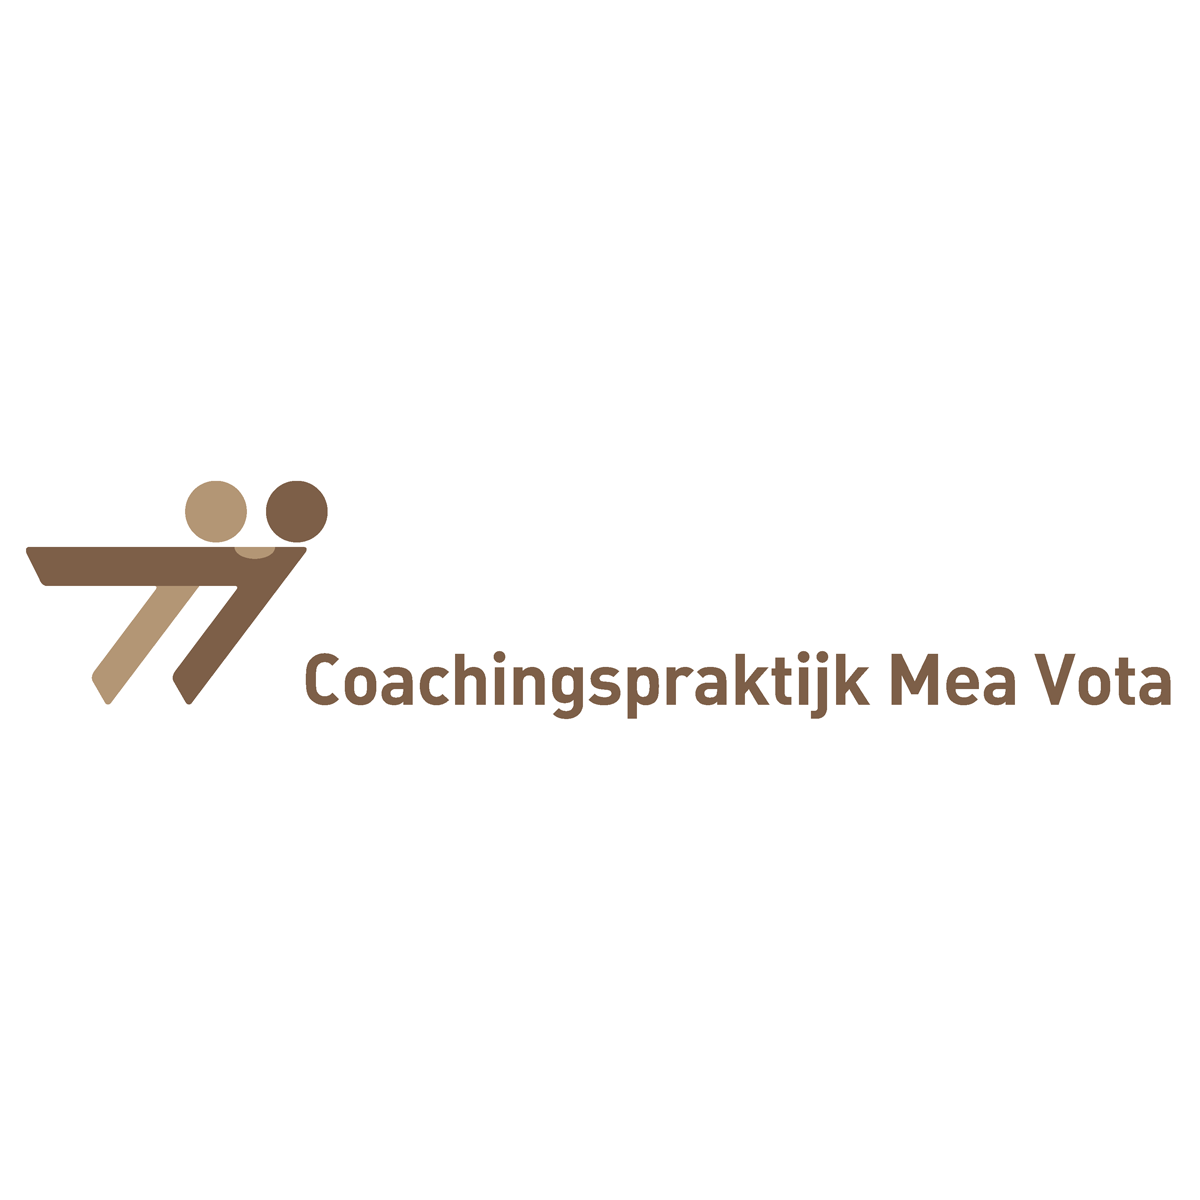 Coachingspraktijk-Mea-Vota